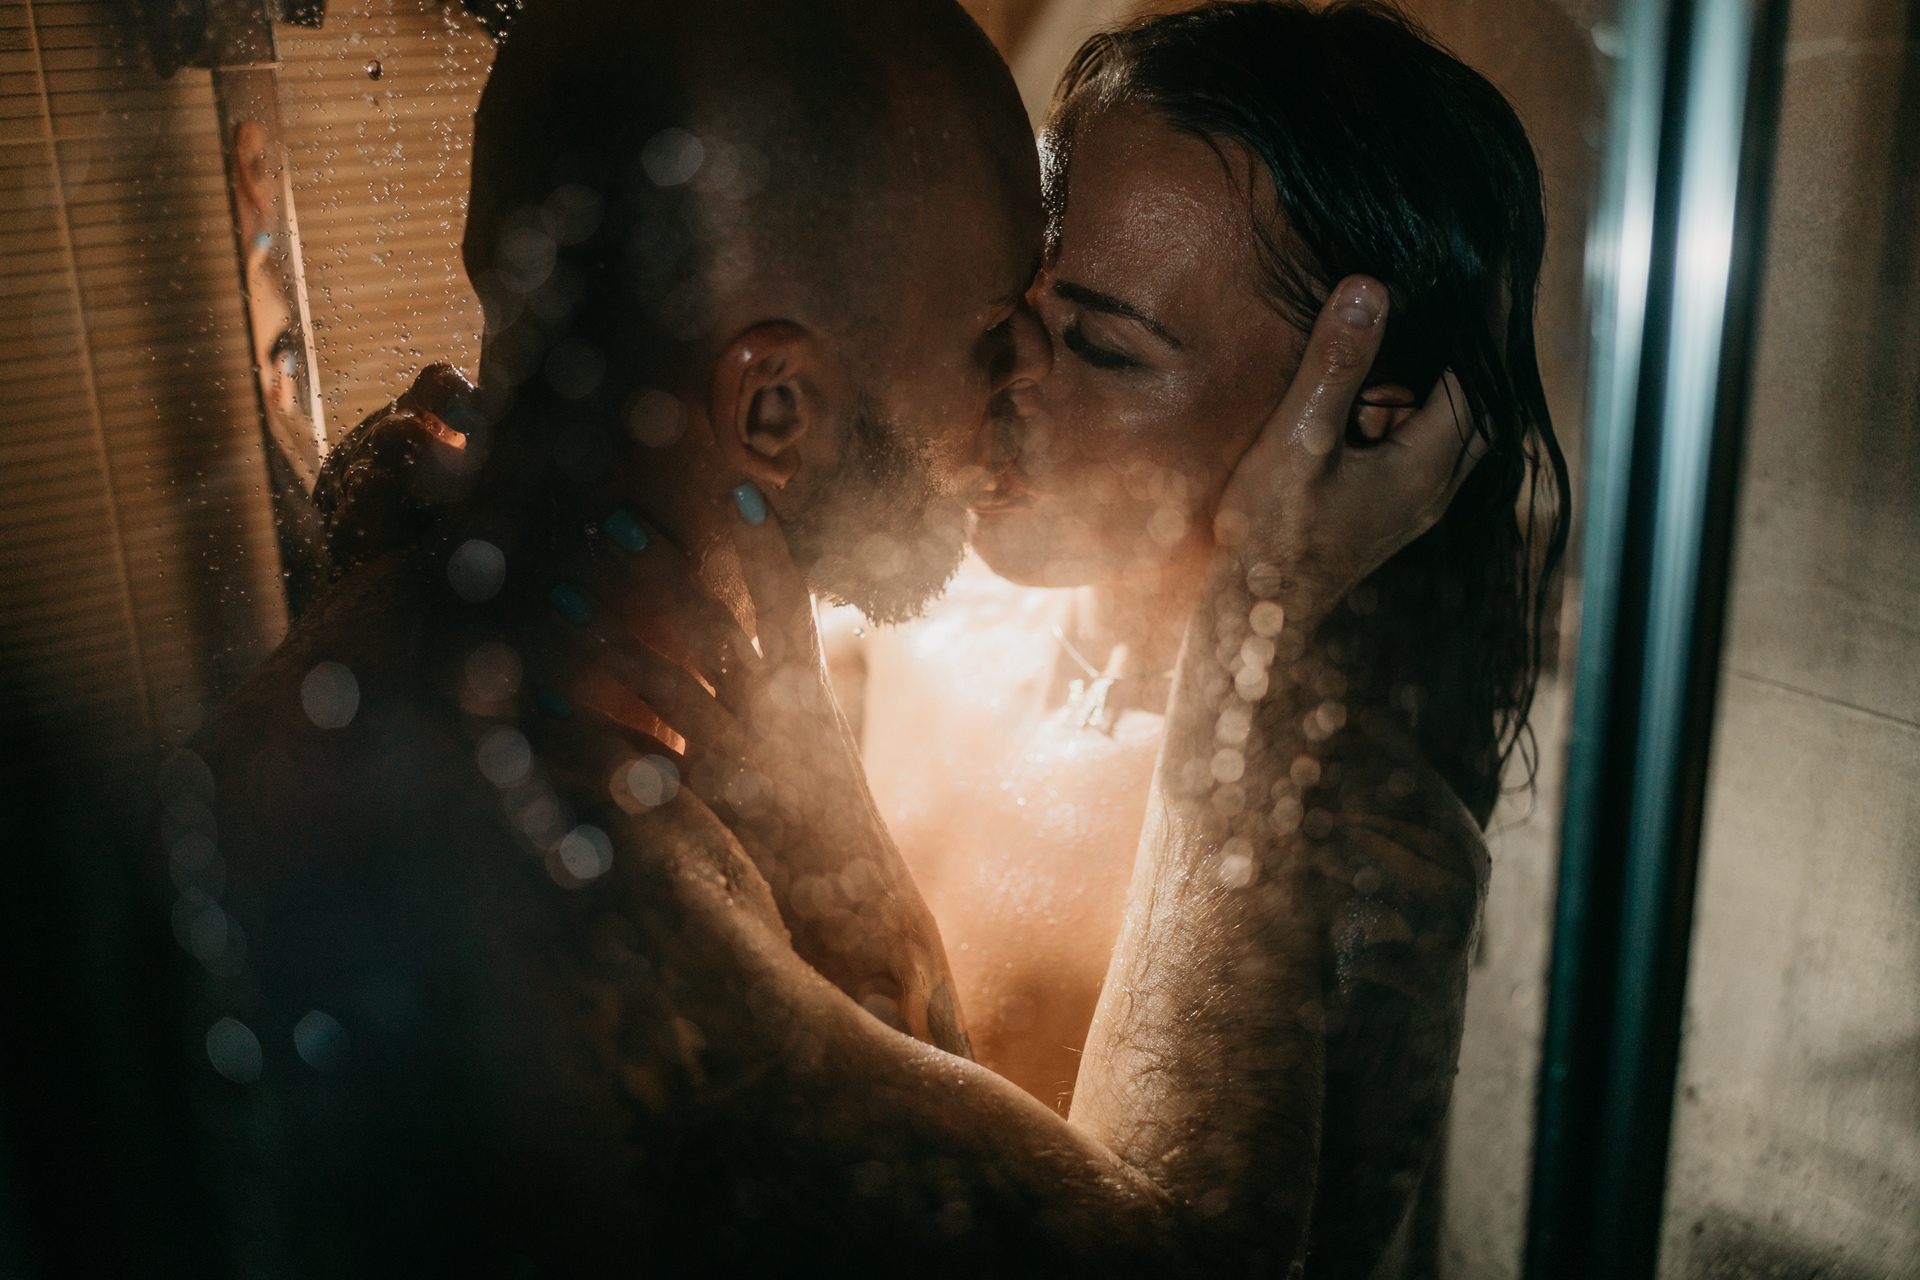 Sesja zdjęciowa dla par Poznań - pocałunek pary pod prysznicem